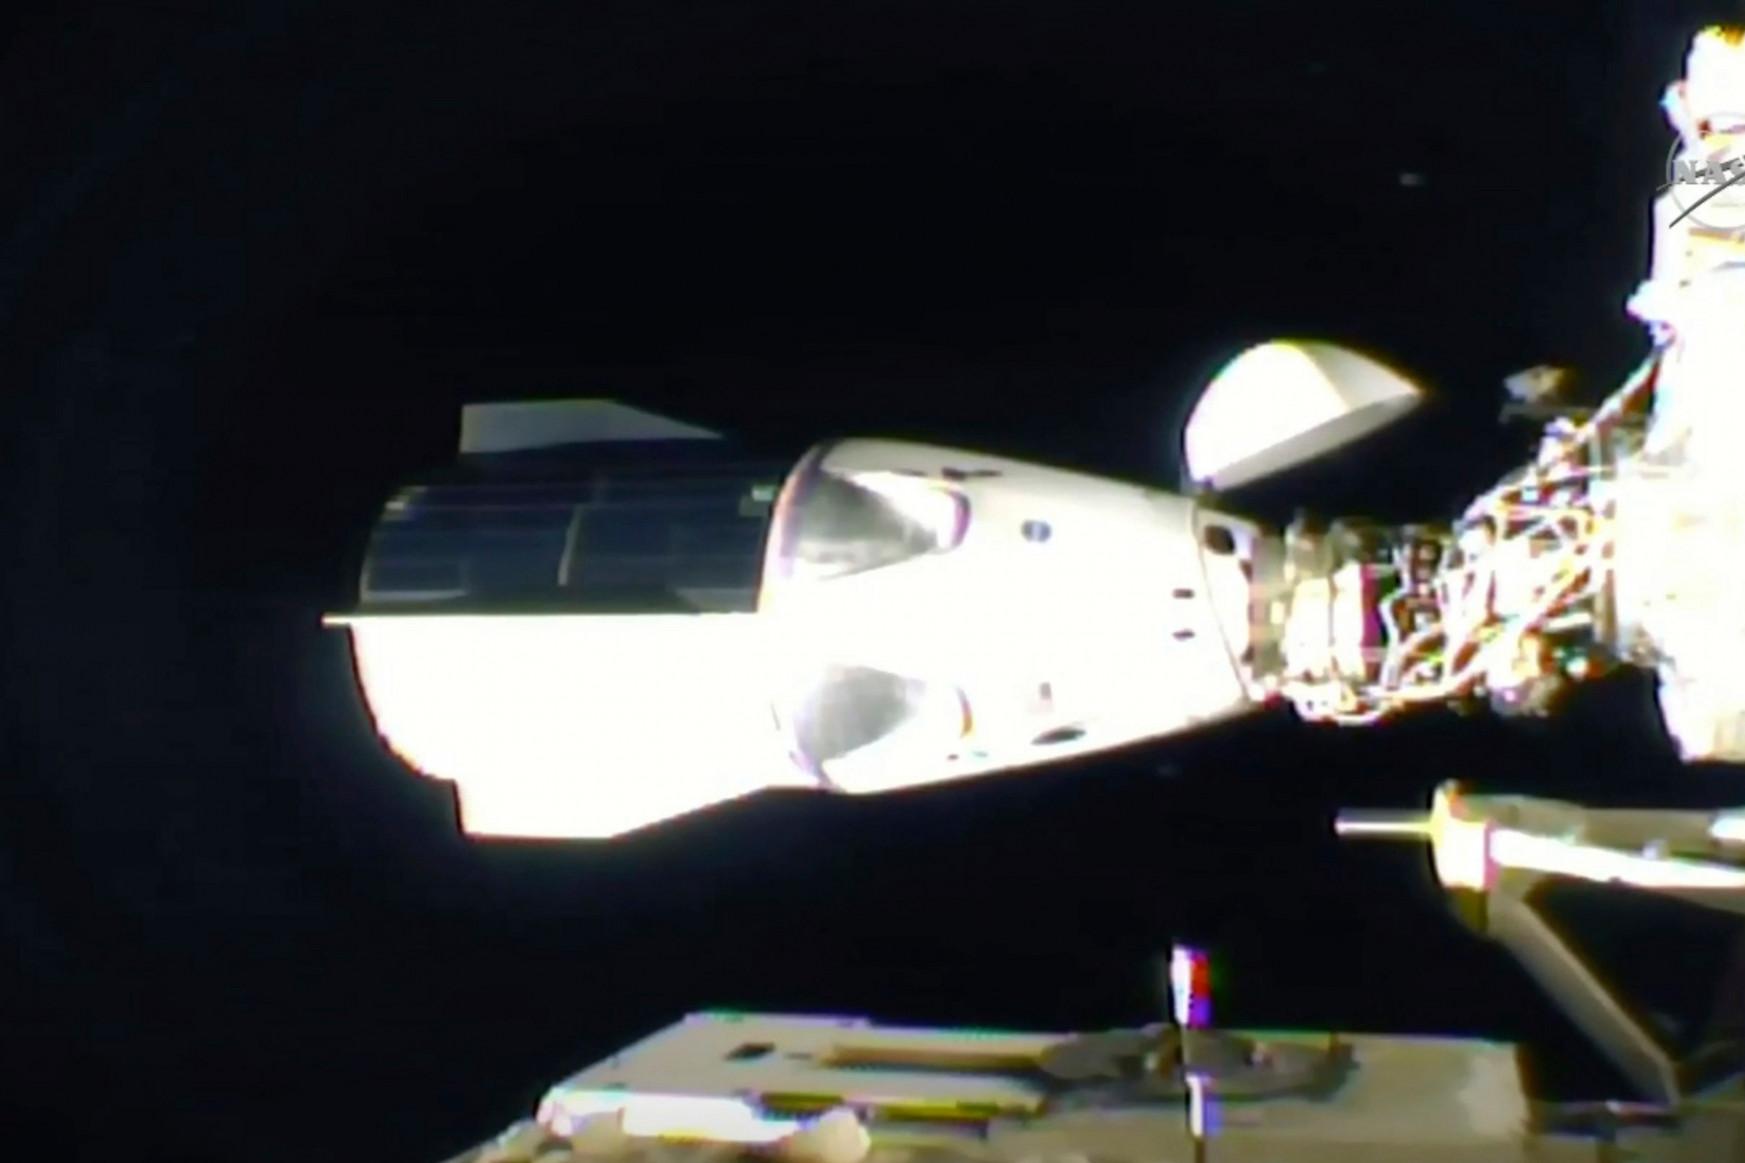 Megérkezett az űrállomásra a SpaceX első üzemszerű missziója